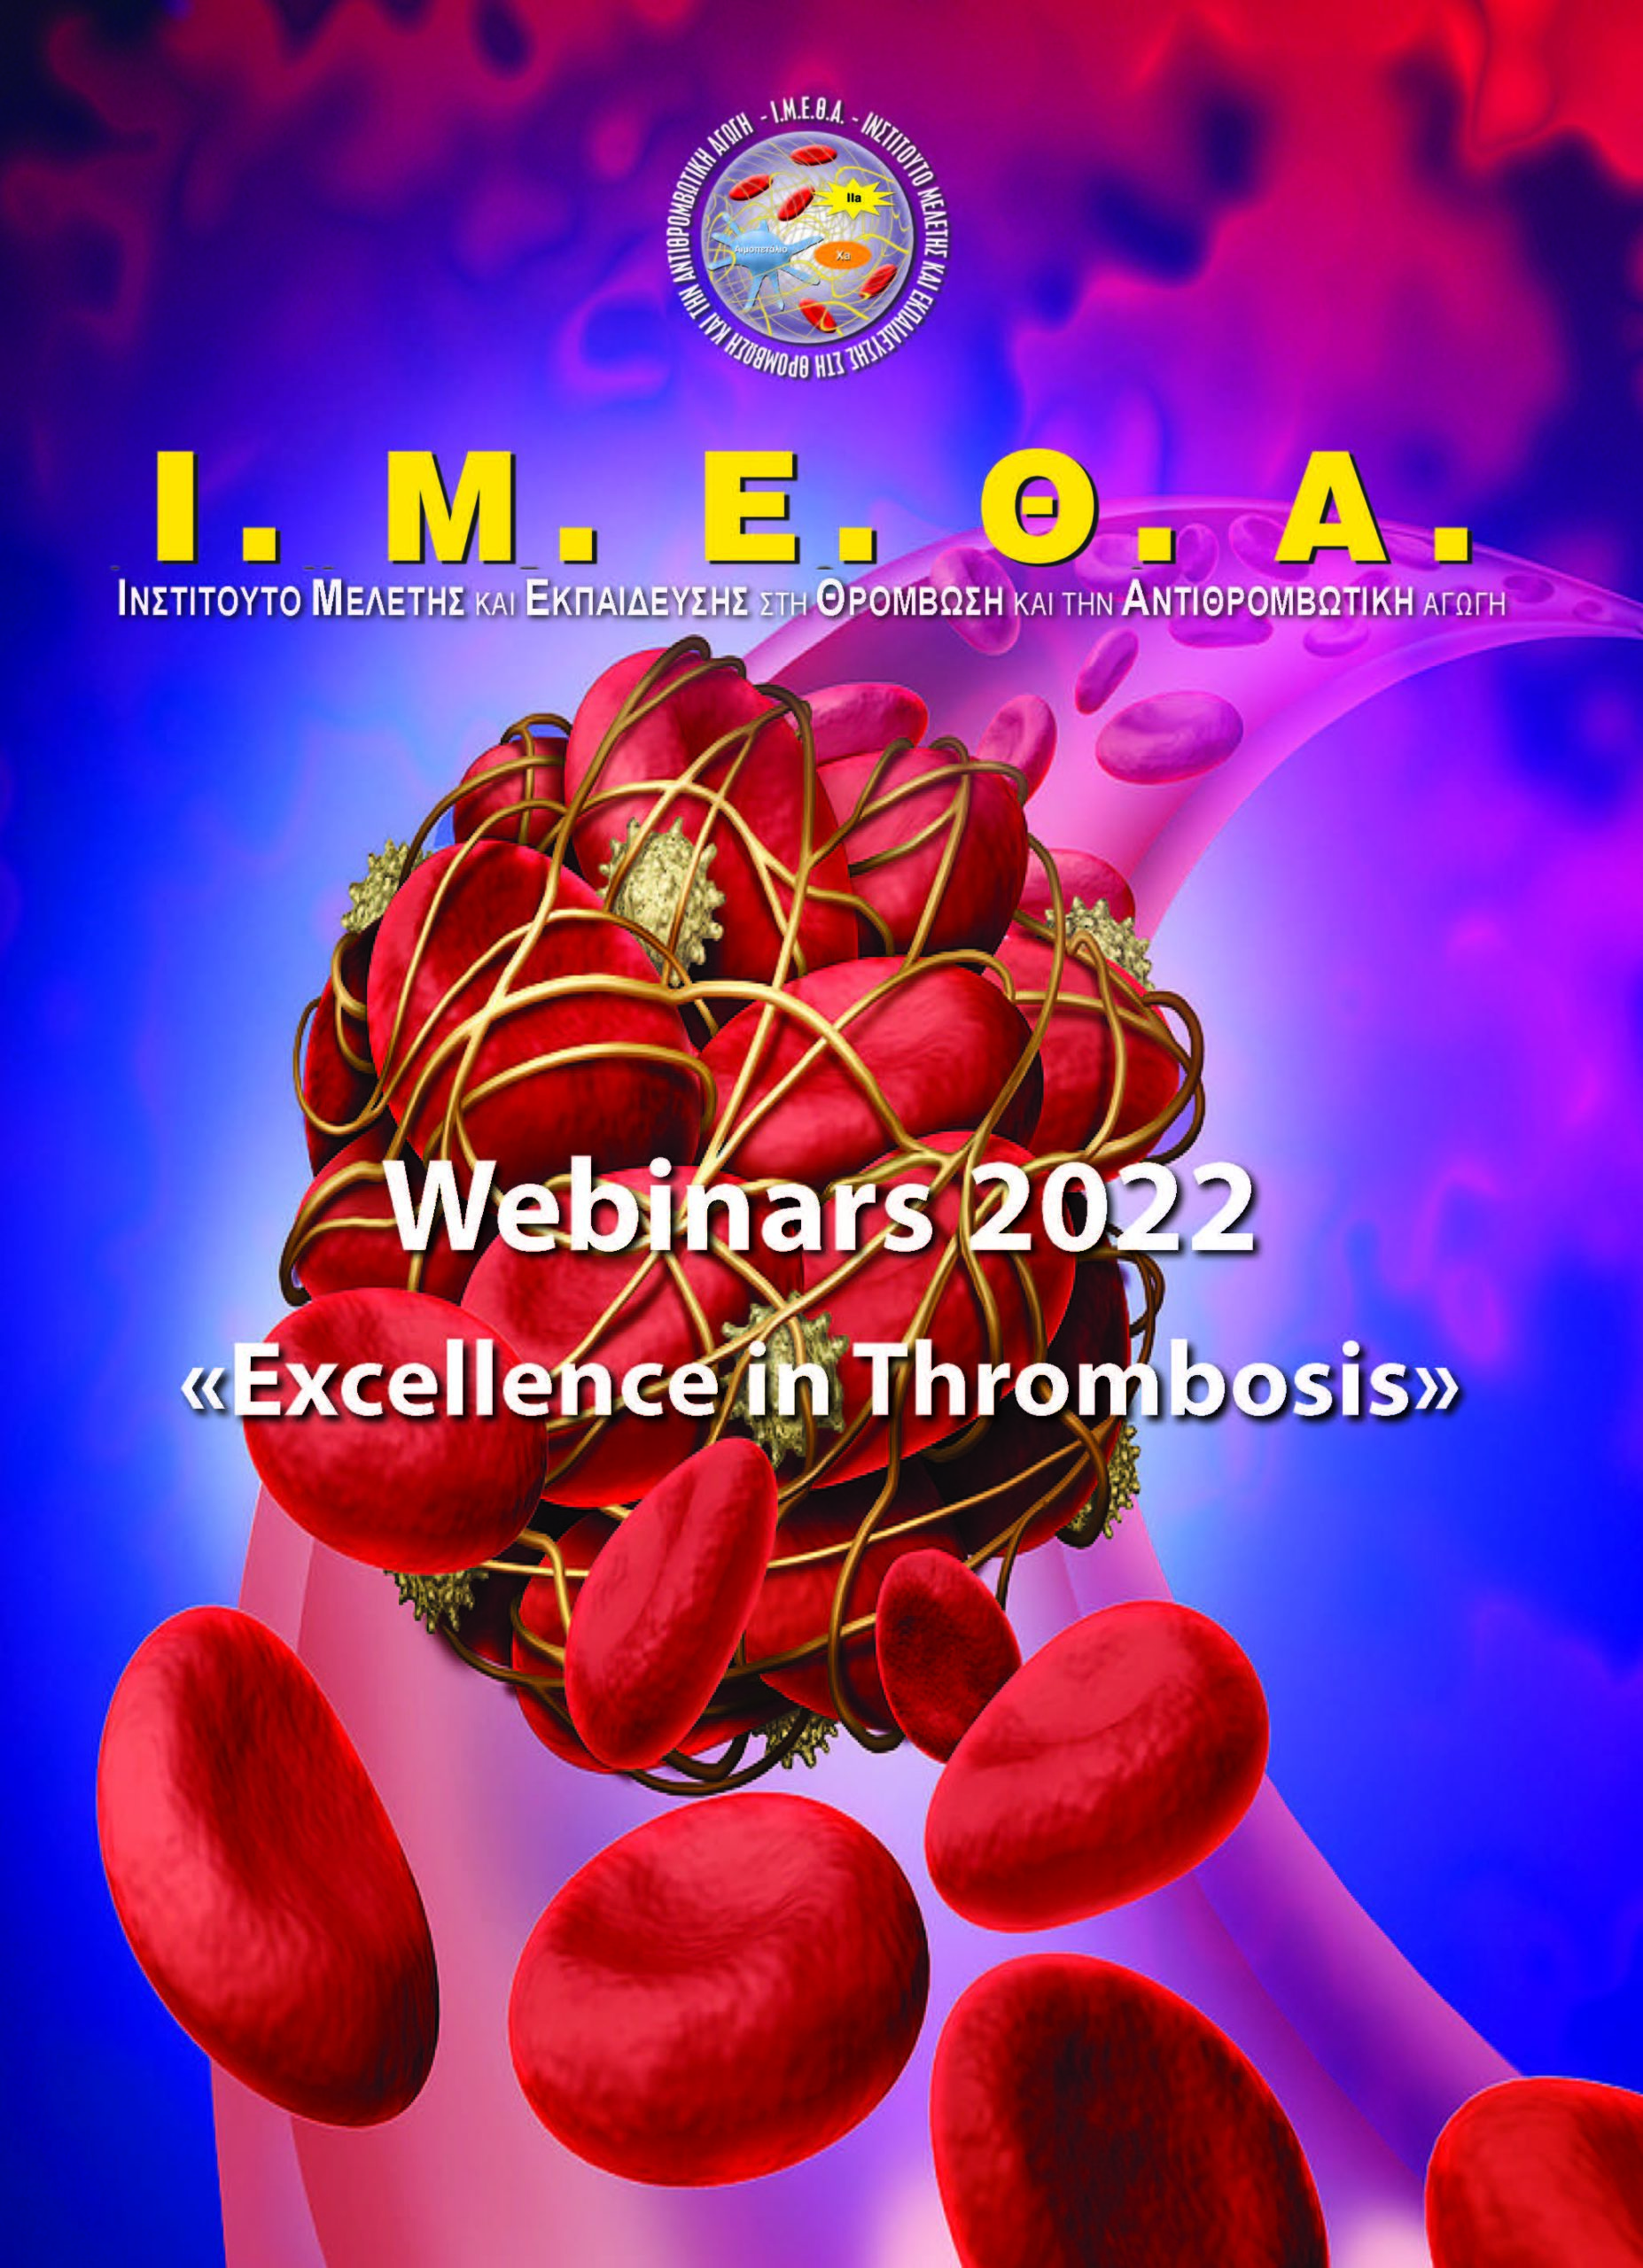 9ο Webinar Ι.Μ.Ε.Θ.Α. “Excellence in Thrombosis” – Ε. Λευκού (Πέμπτη 2/6/2022, 17:00)